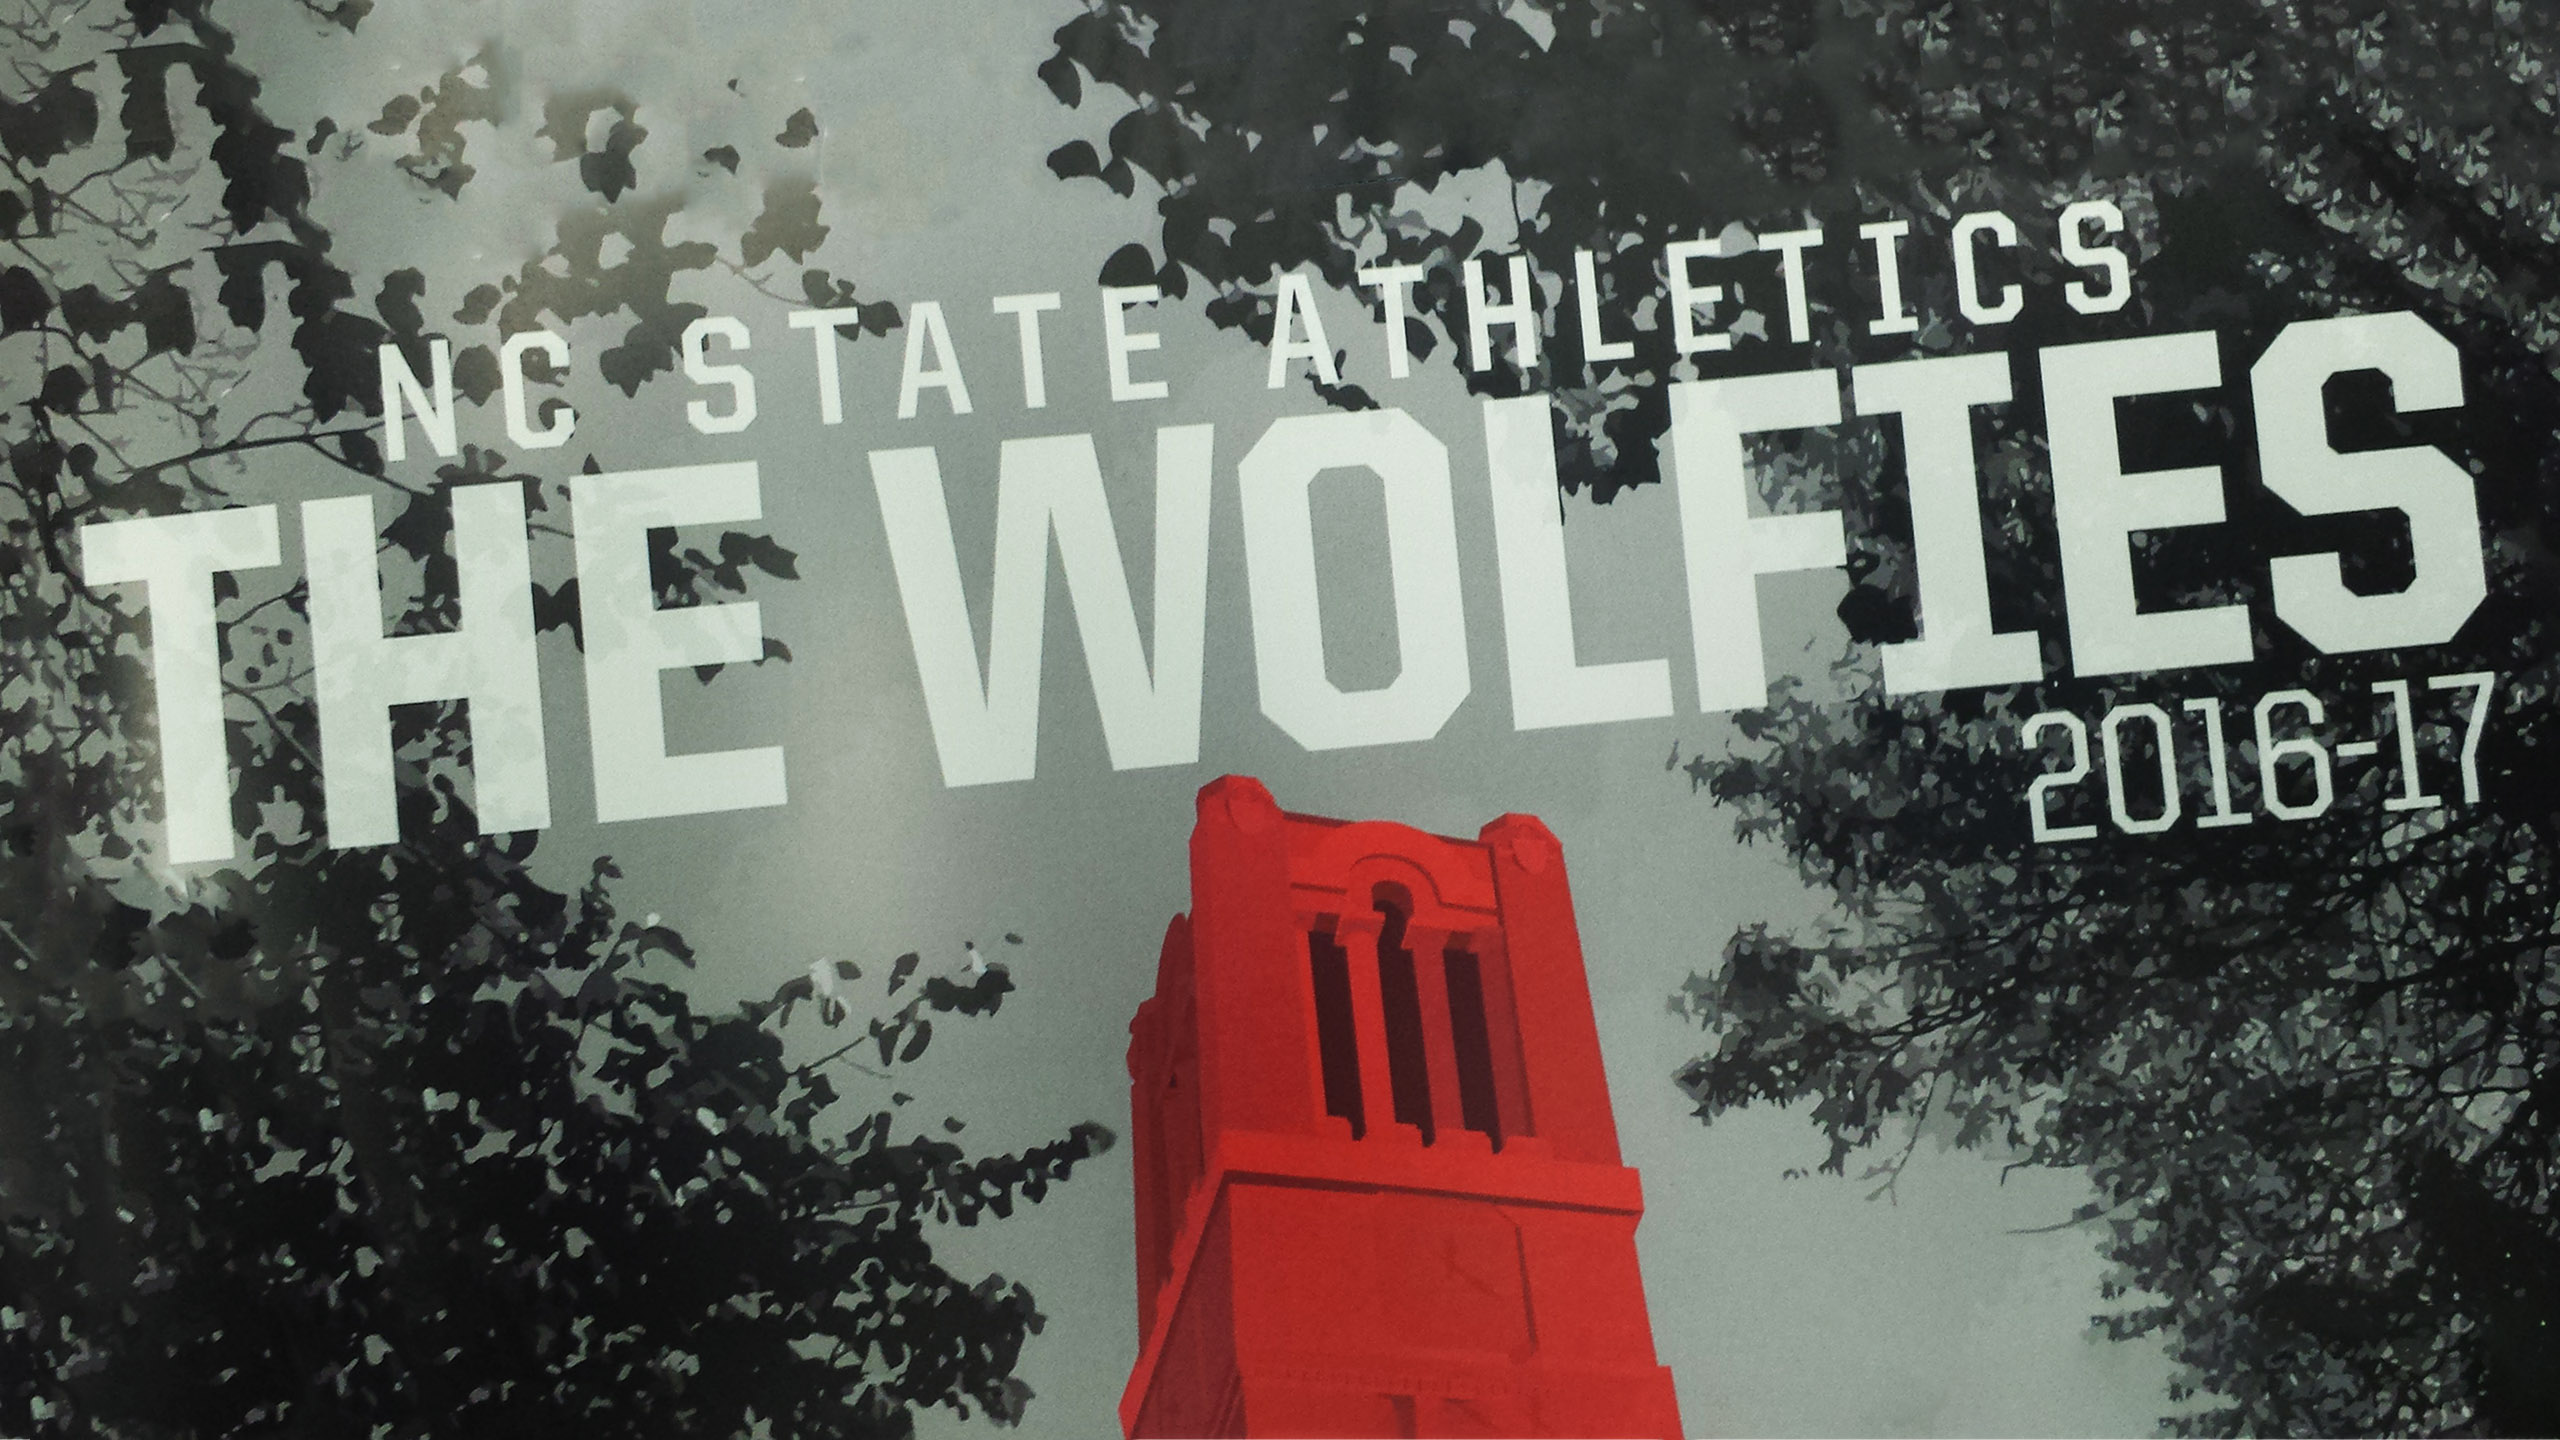 ISE scholar-athletes shine at the Wolfie Awards